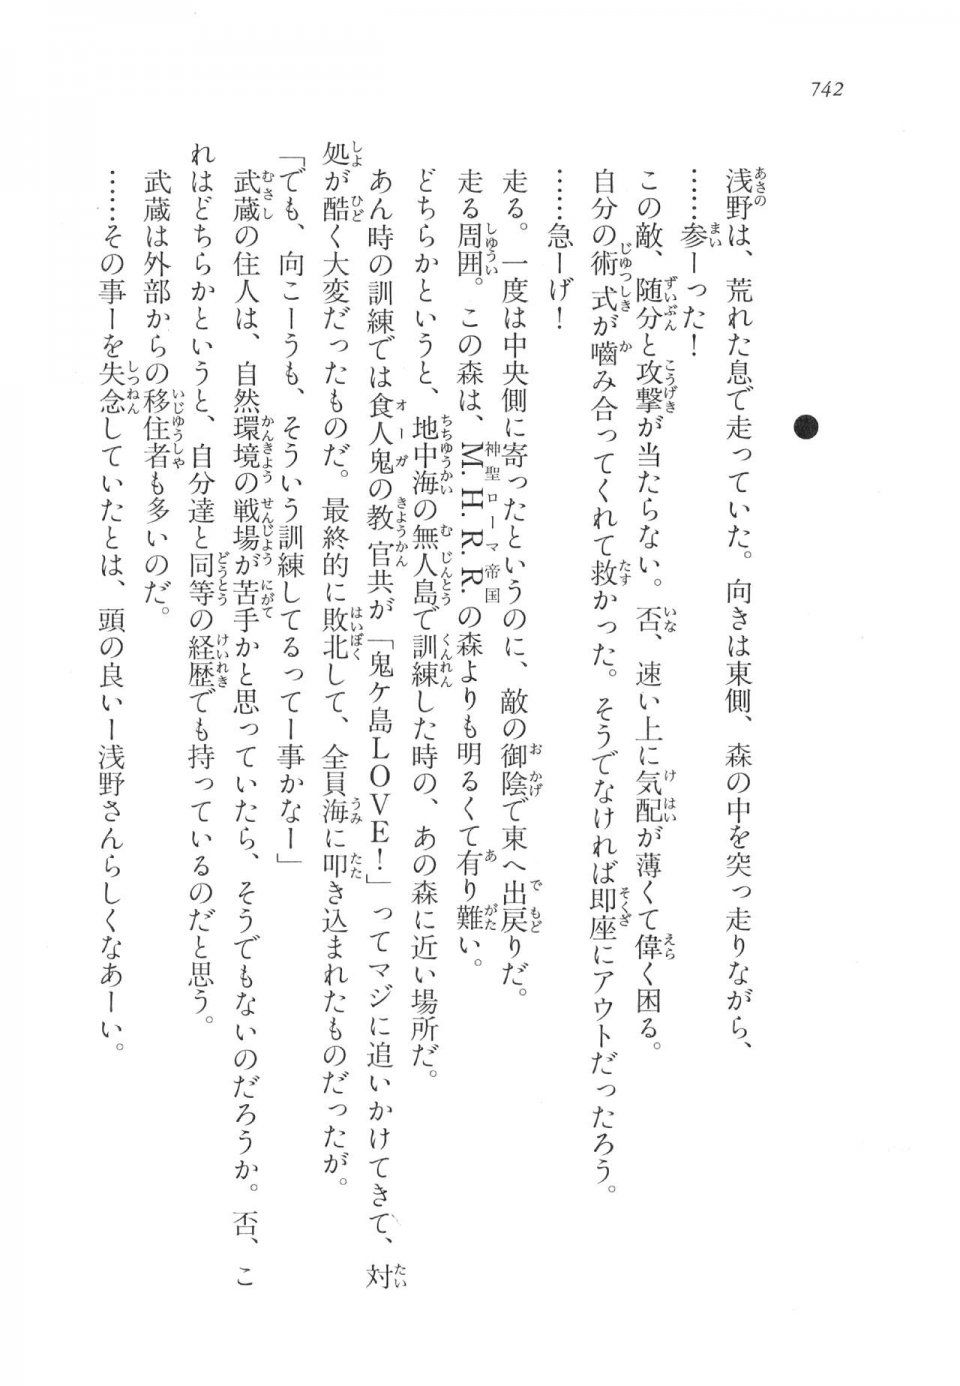 Kyoukai Senjou no Horizon LN Vol 17(7B) - Photo #744